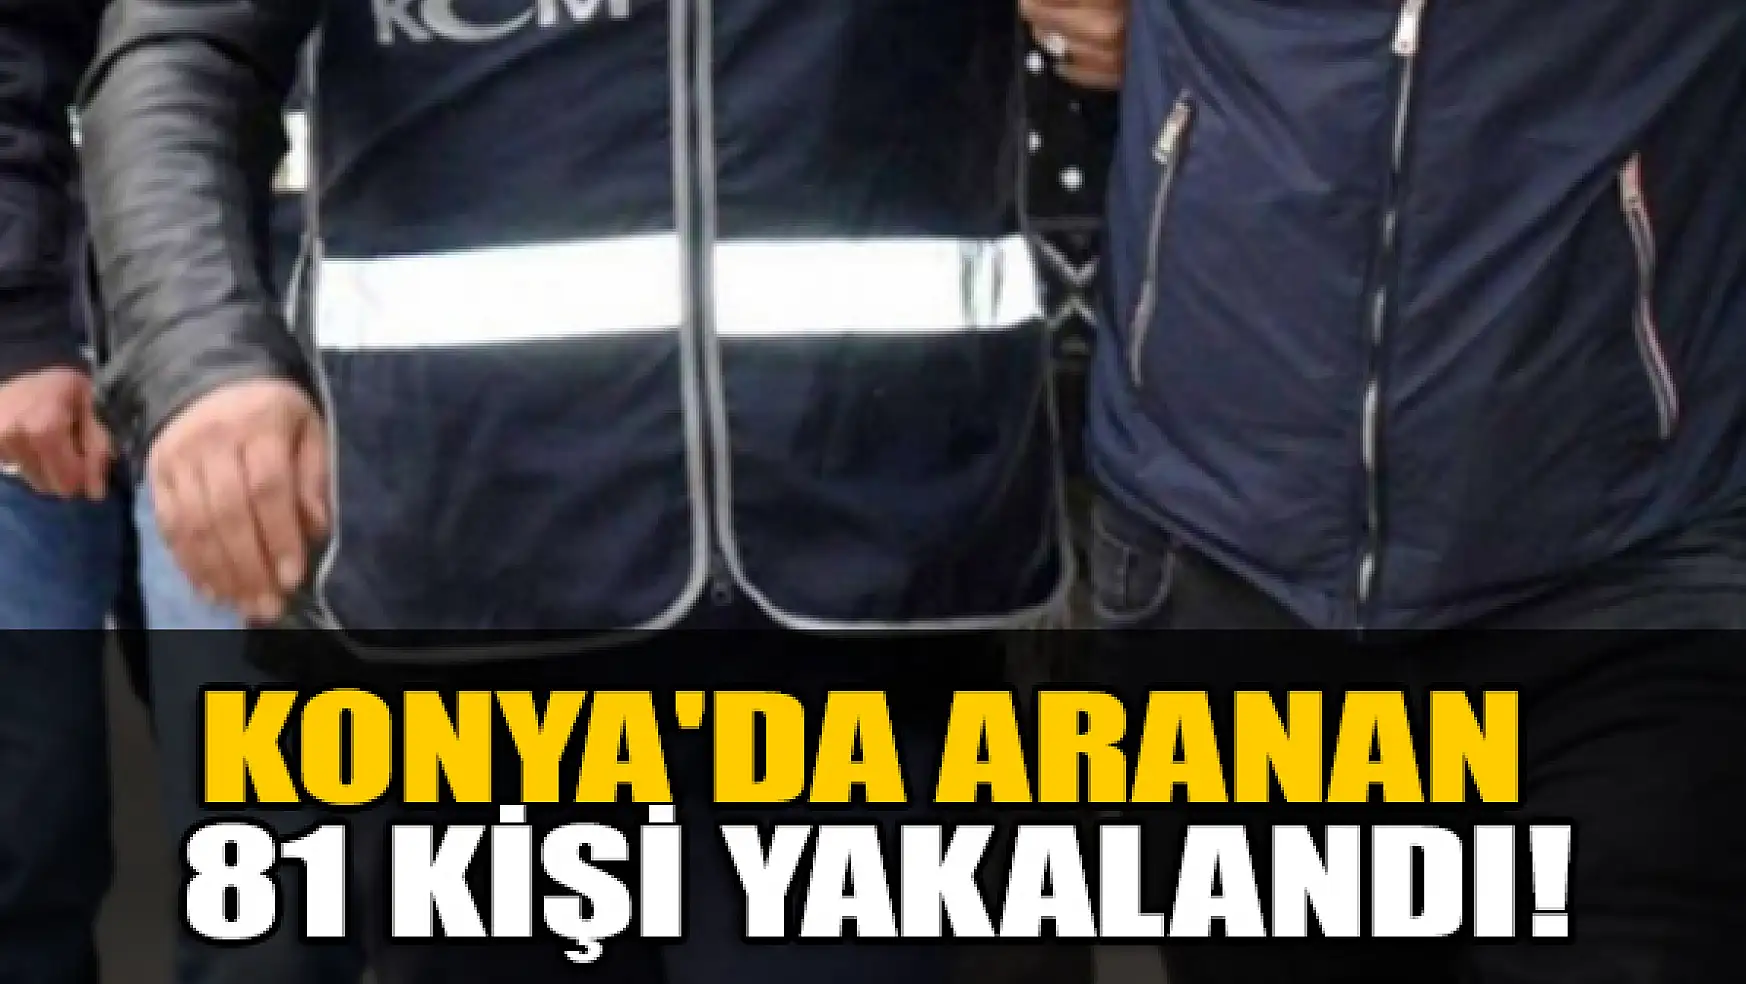 Konya'da aranan 81 kişi yakalandı!